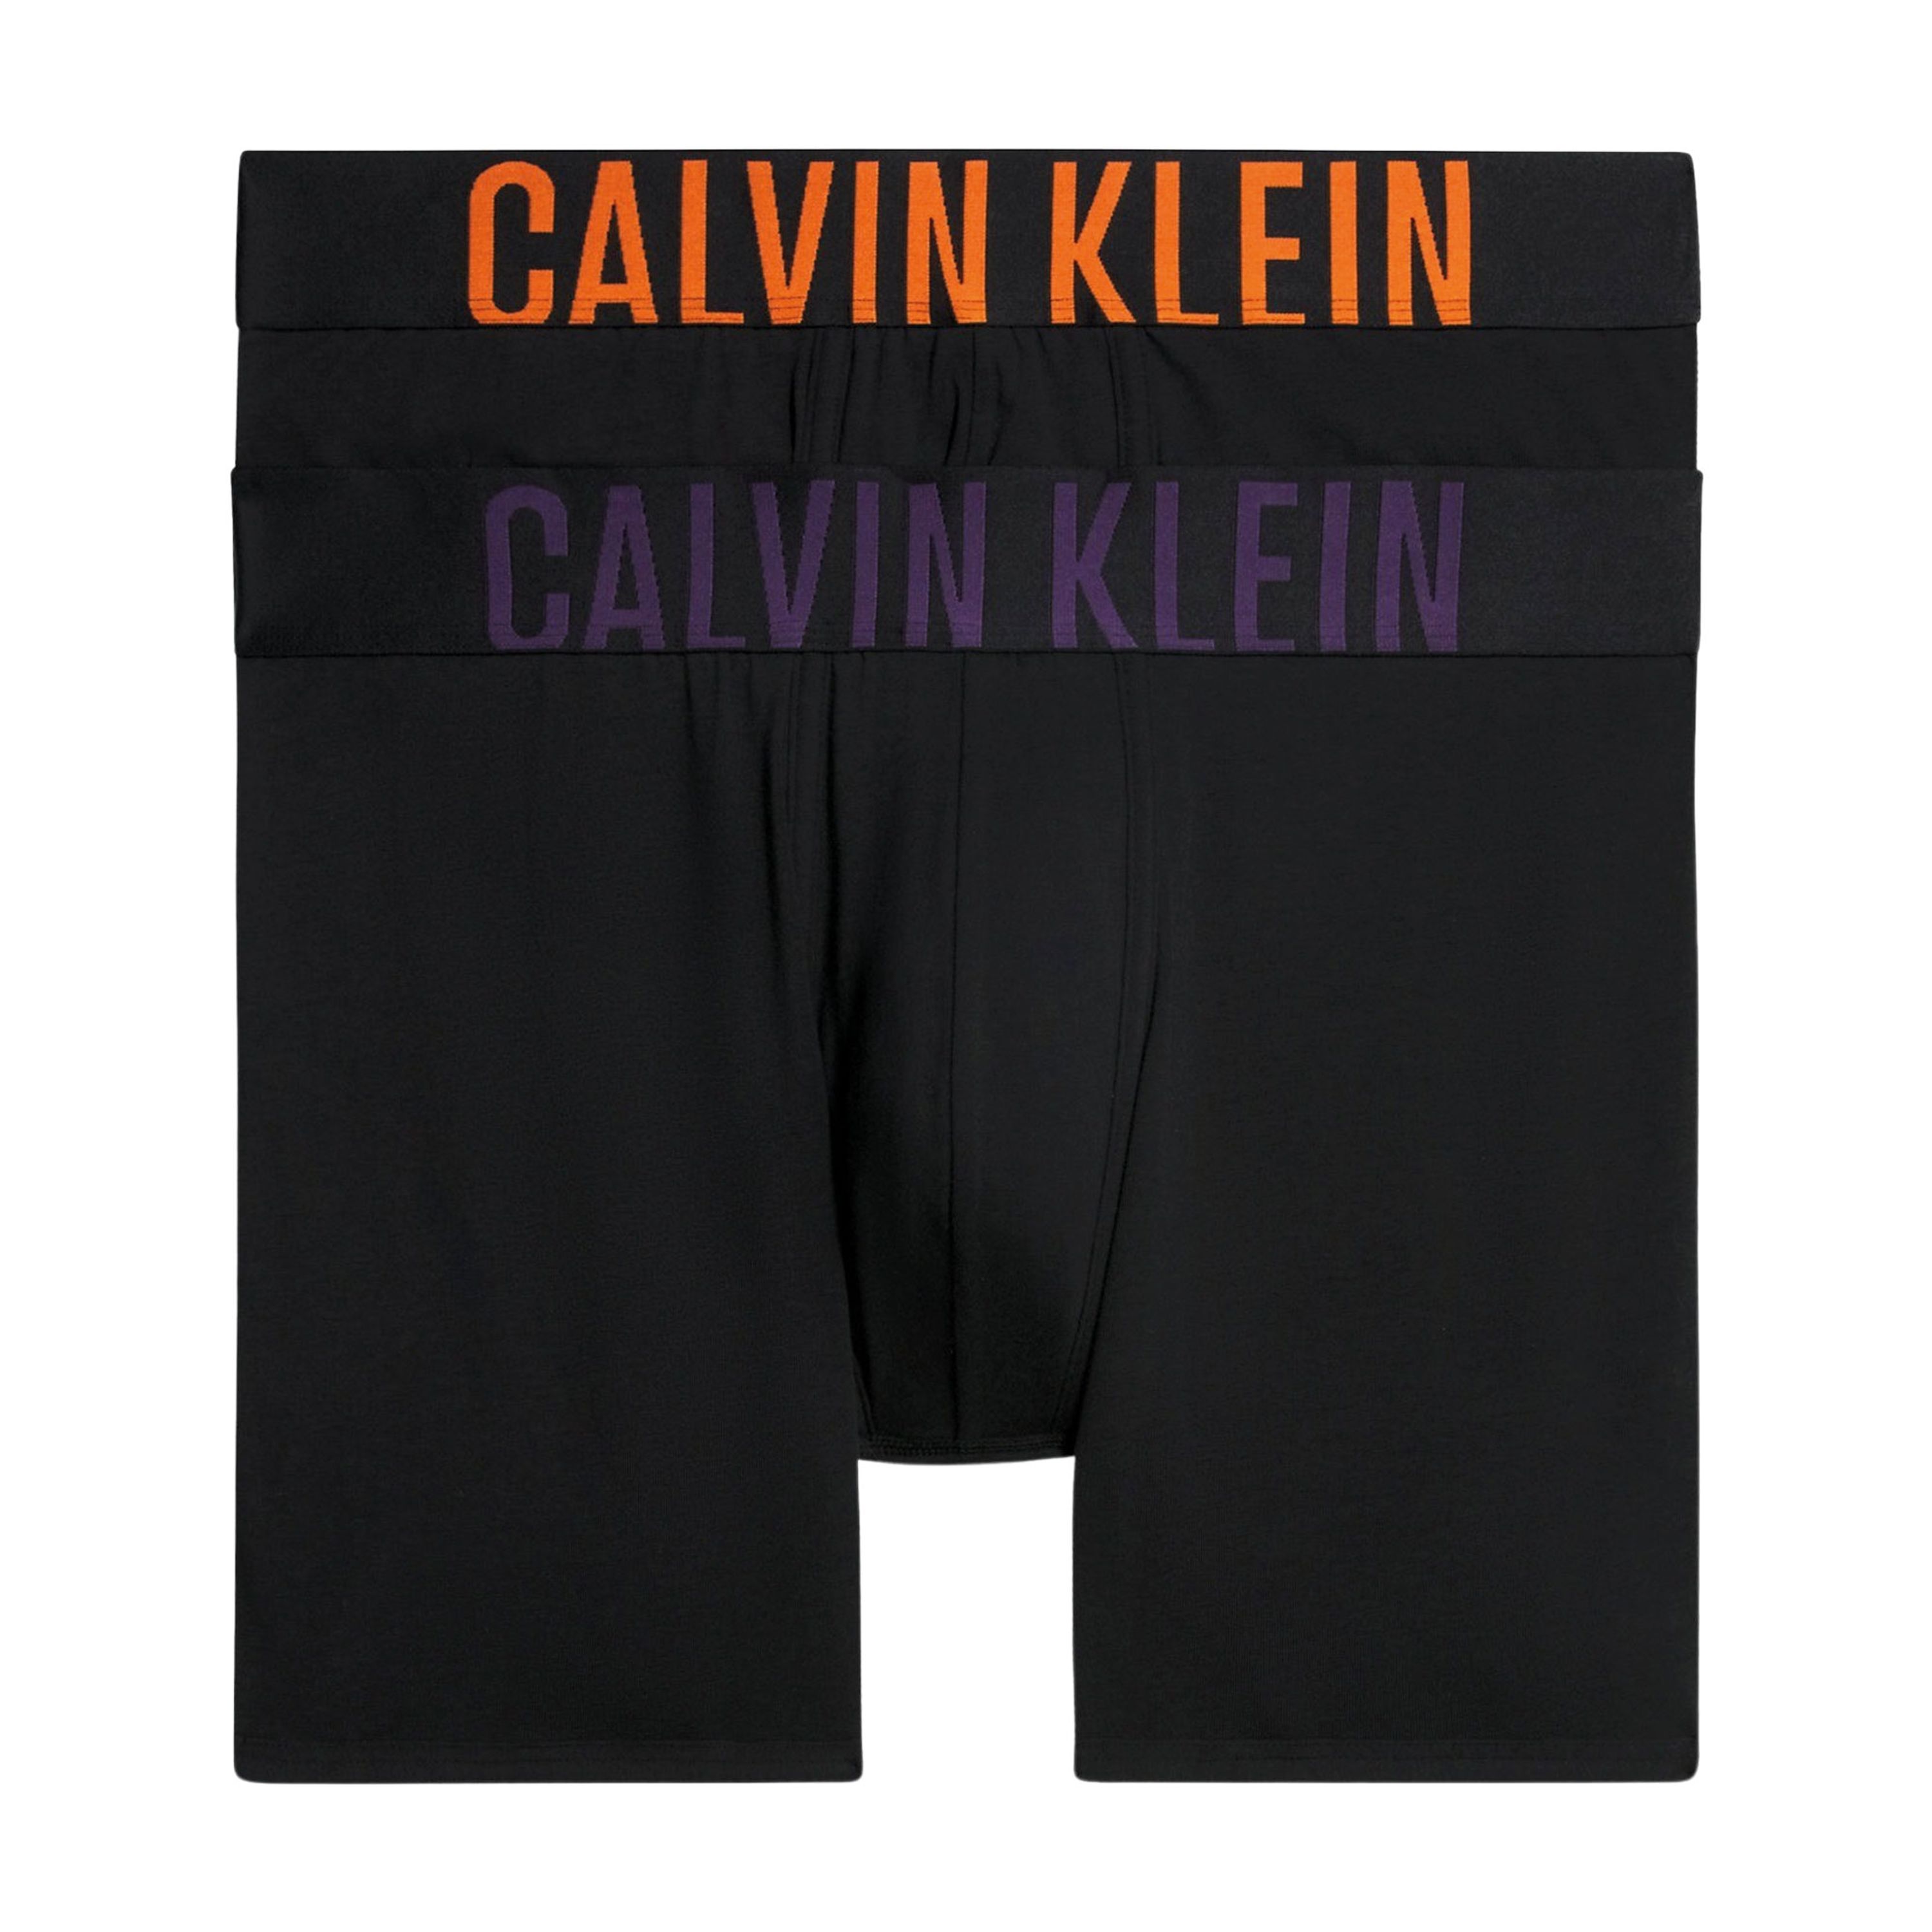 Calvin Klein Underwear Boxershort met elastische band met label in een set van 2 stuks